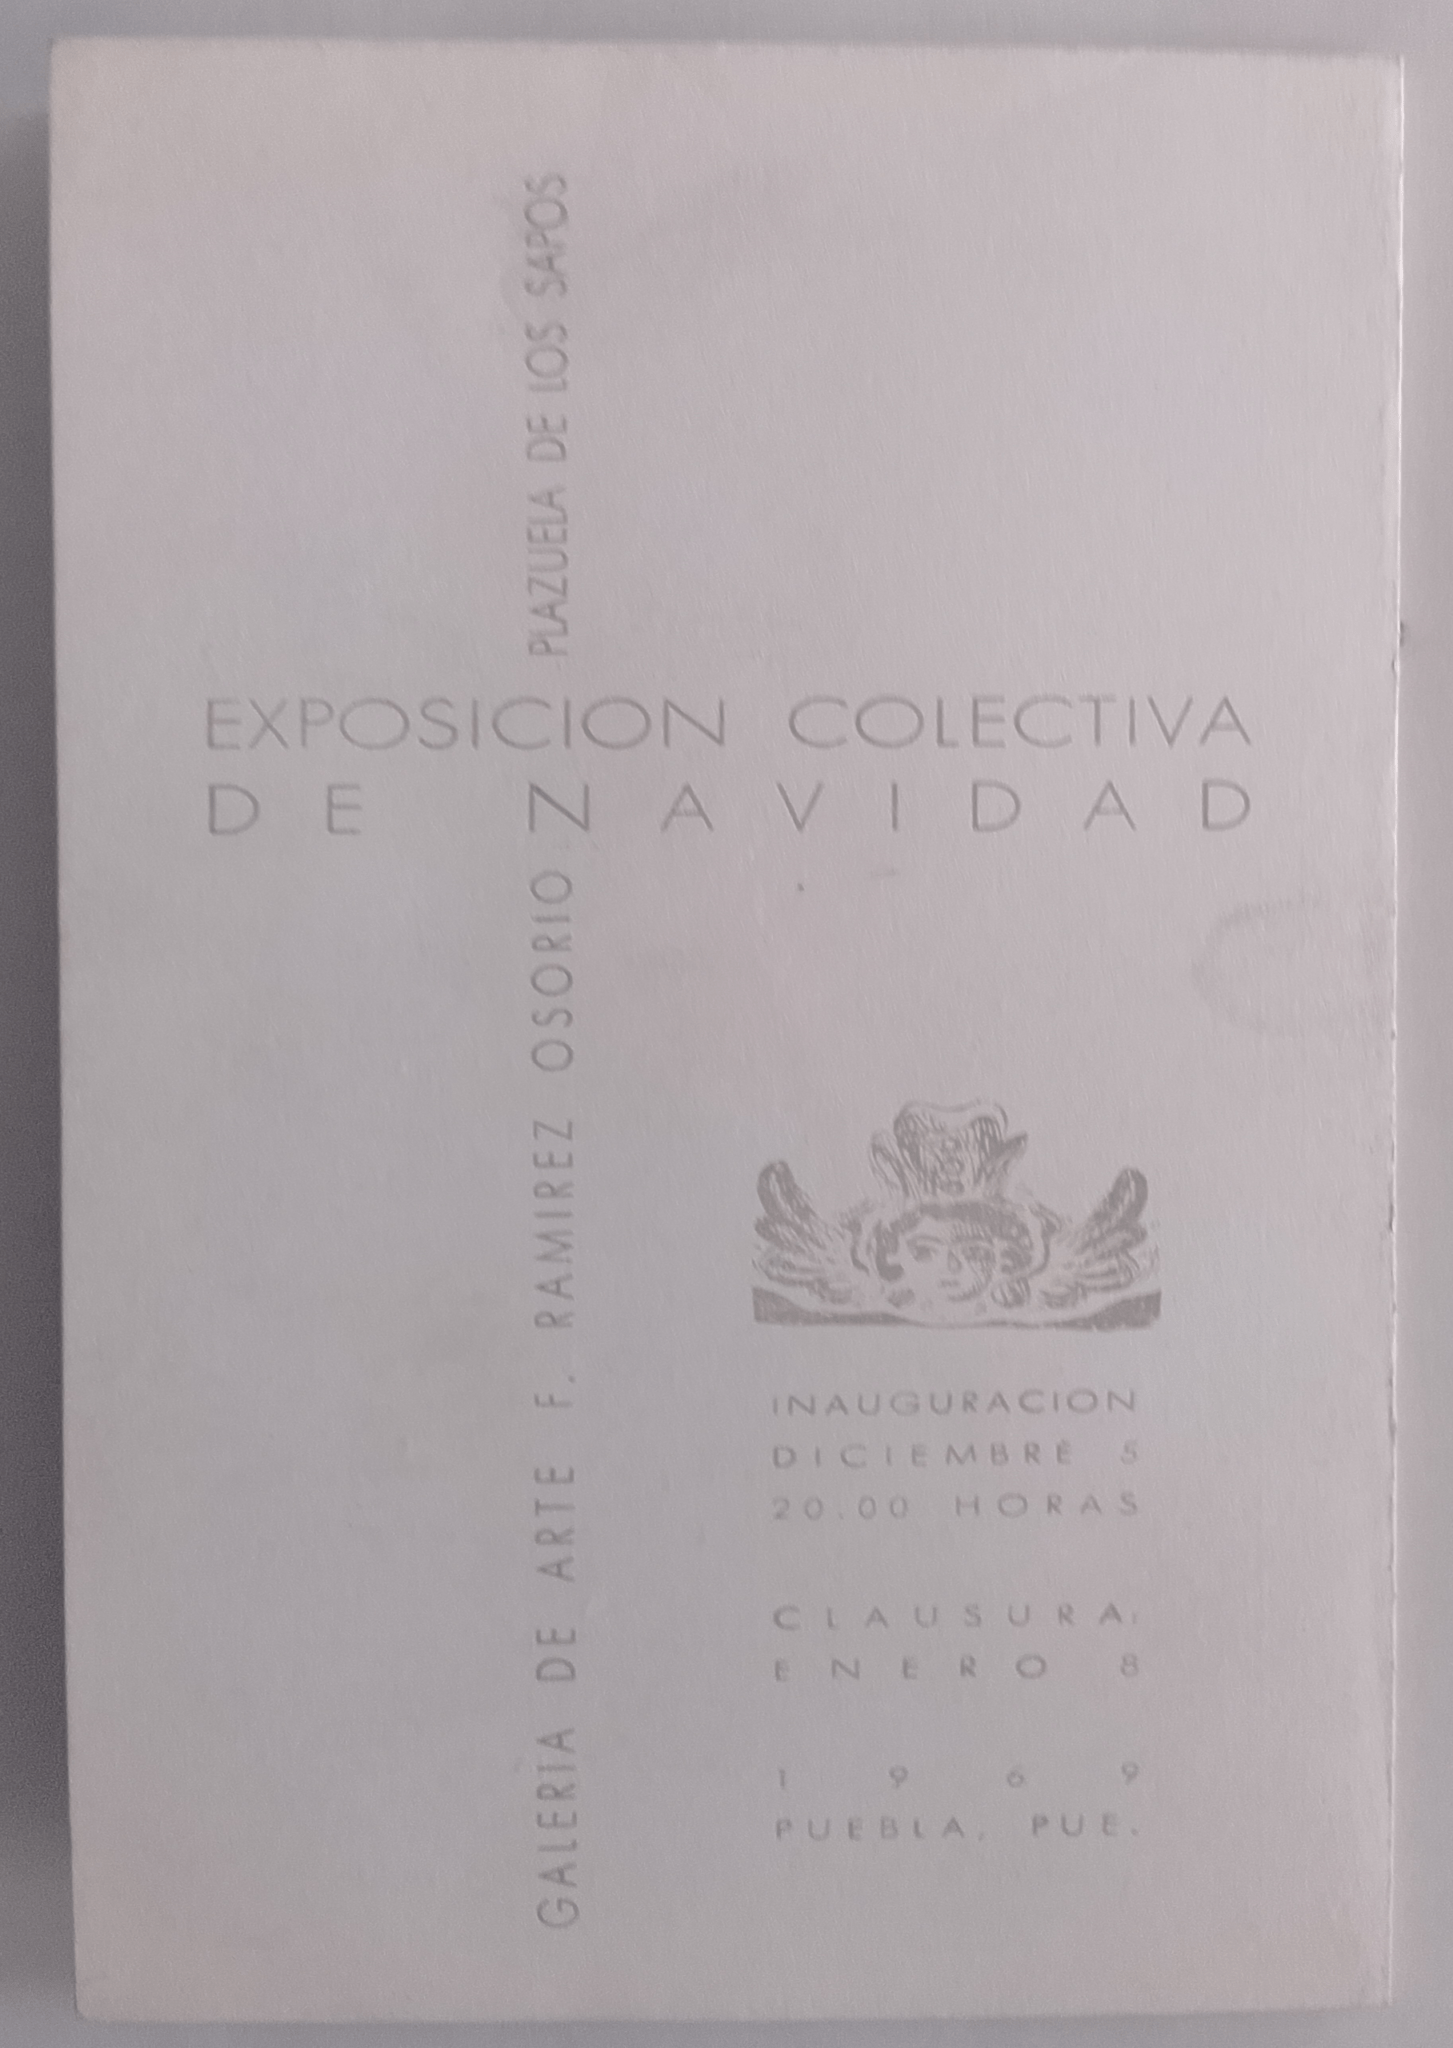 1969 dic 5 Galeria de los Sapos (1)